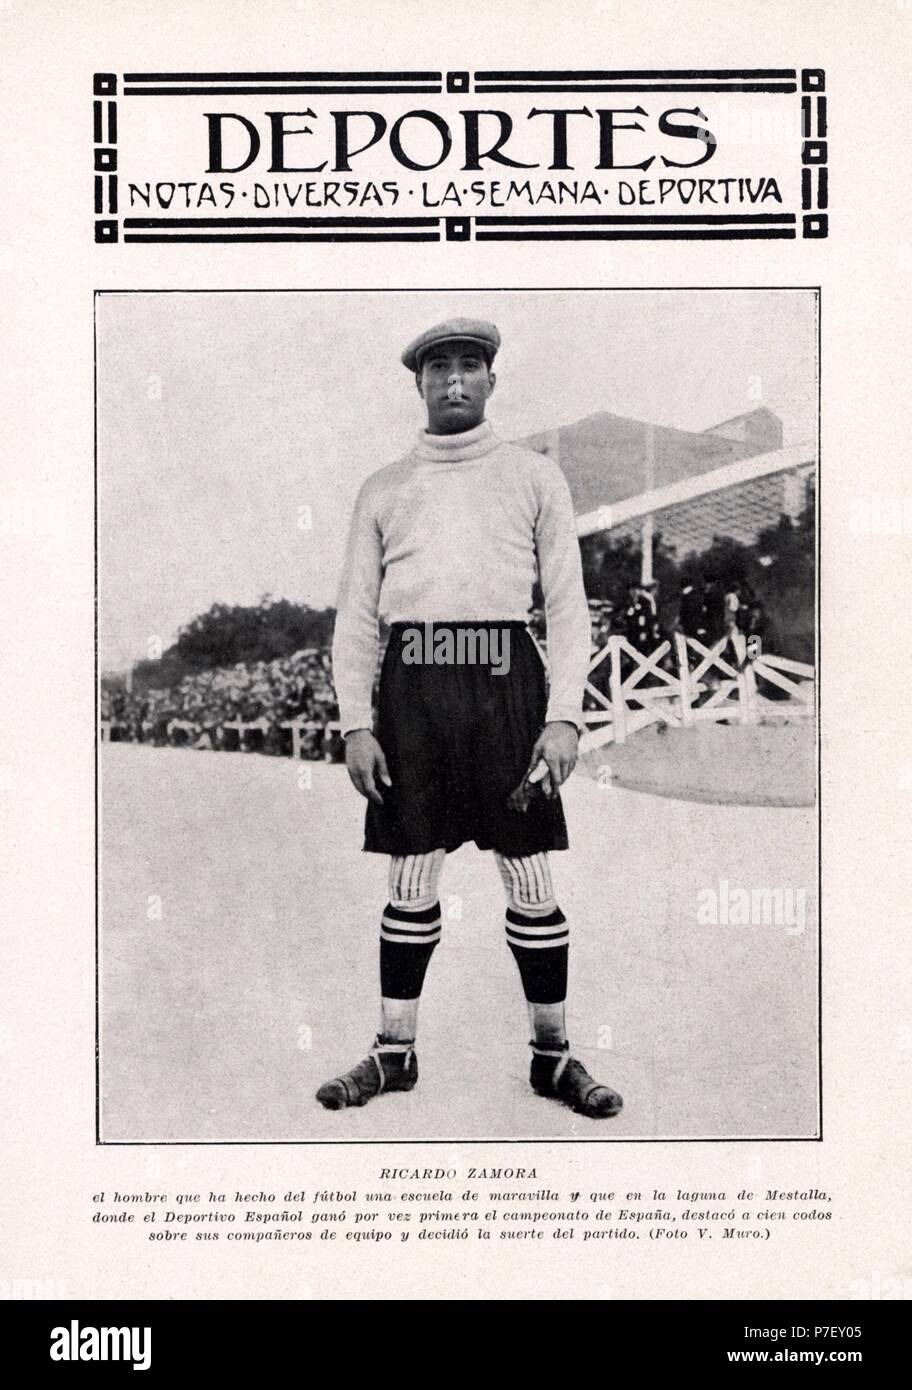 Ricardo Zamora Martínez (1901-1978), futbolista catalán. Fotografía publicada en La Semana Deportiva en 1929. Stock Photo